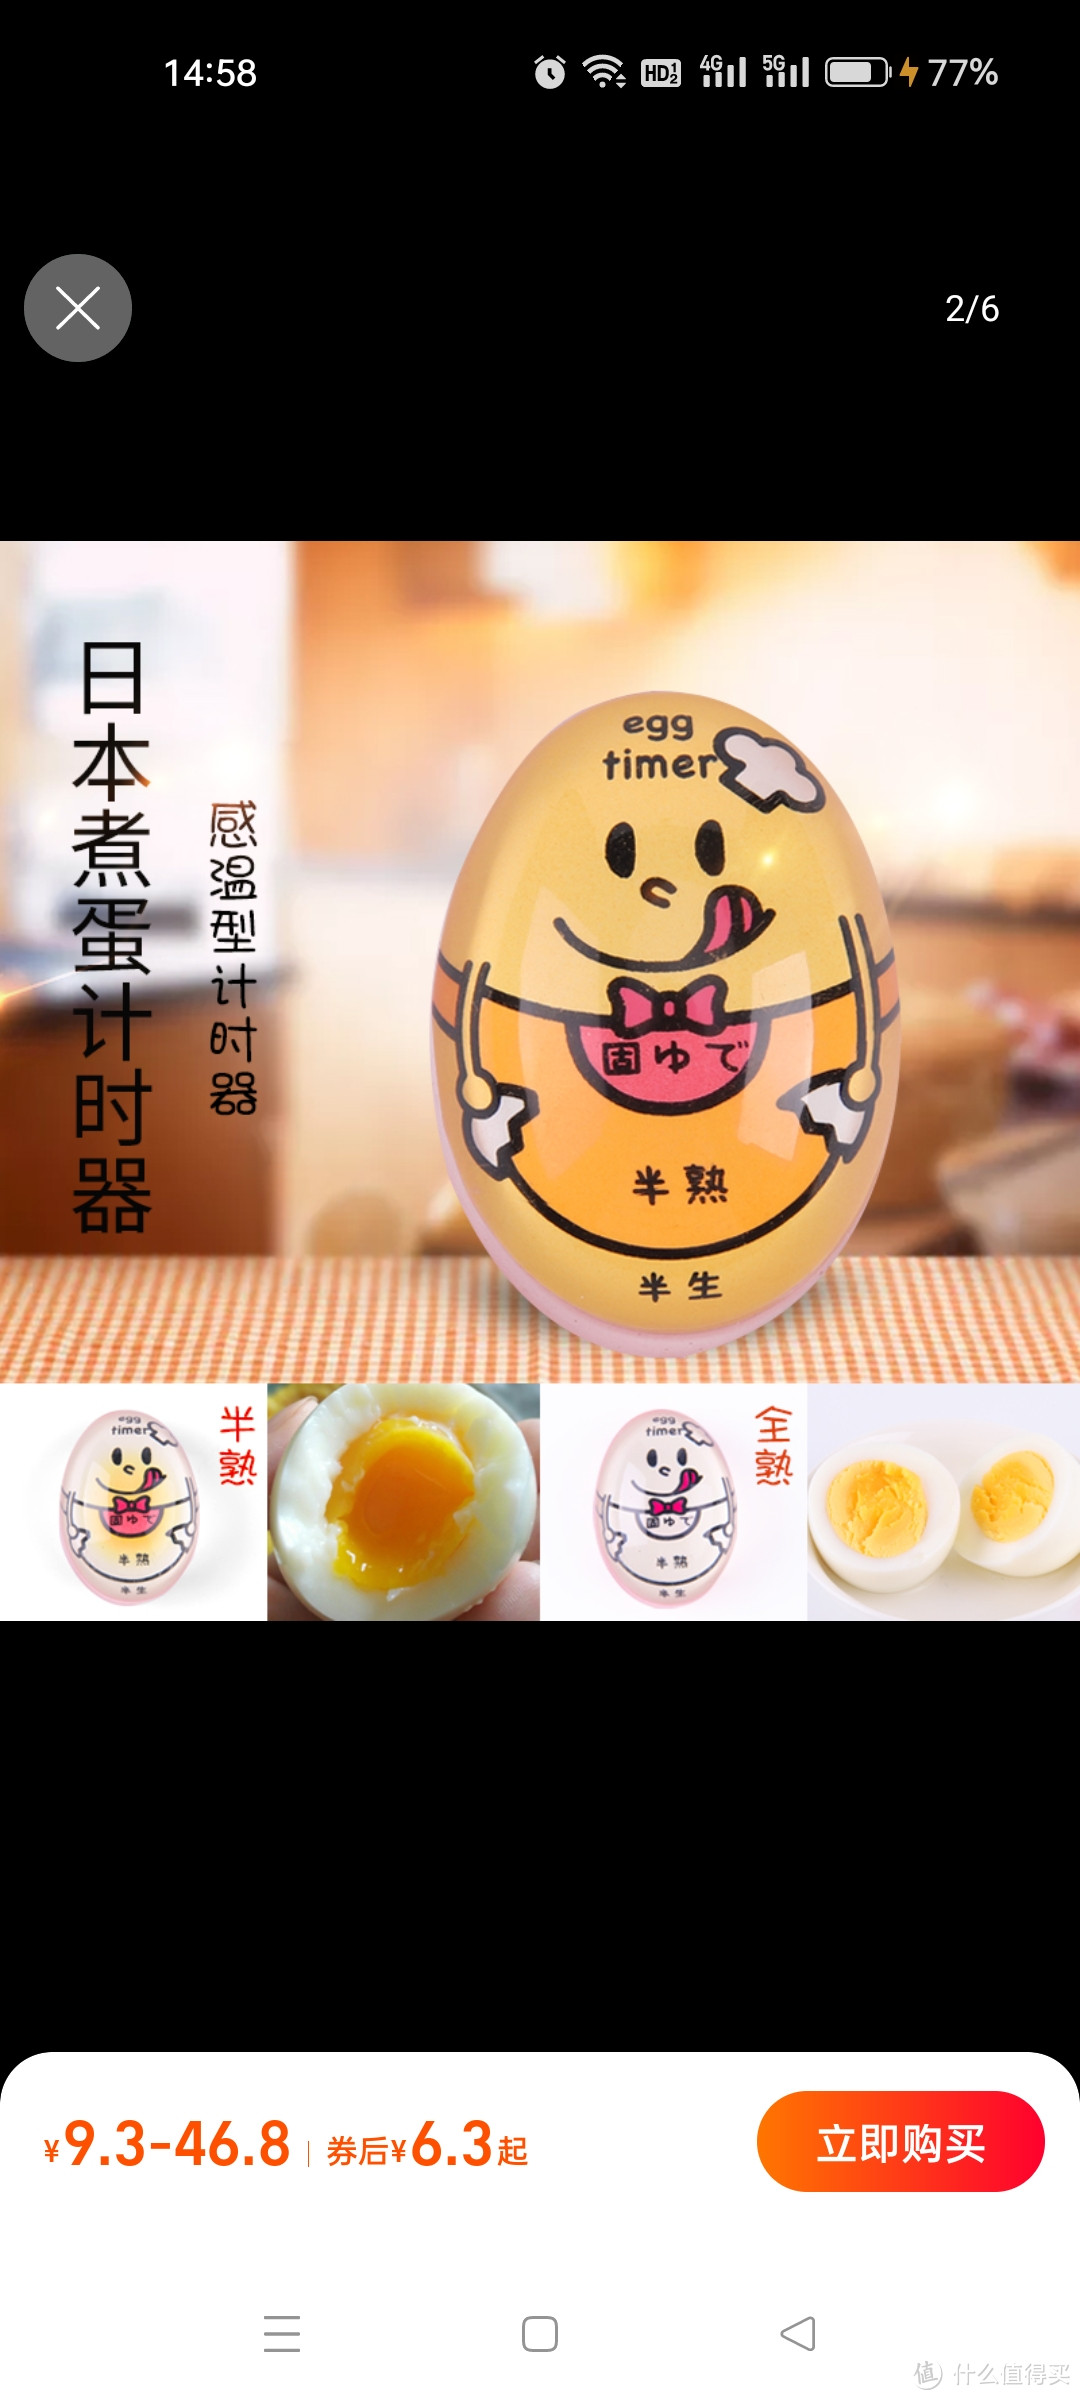 日本煮蛋计时器厨房创意煮鸡蛋定时器温泉蛋溏心蛋观测器提醒神器